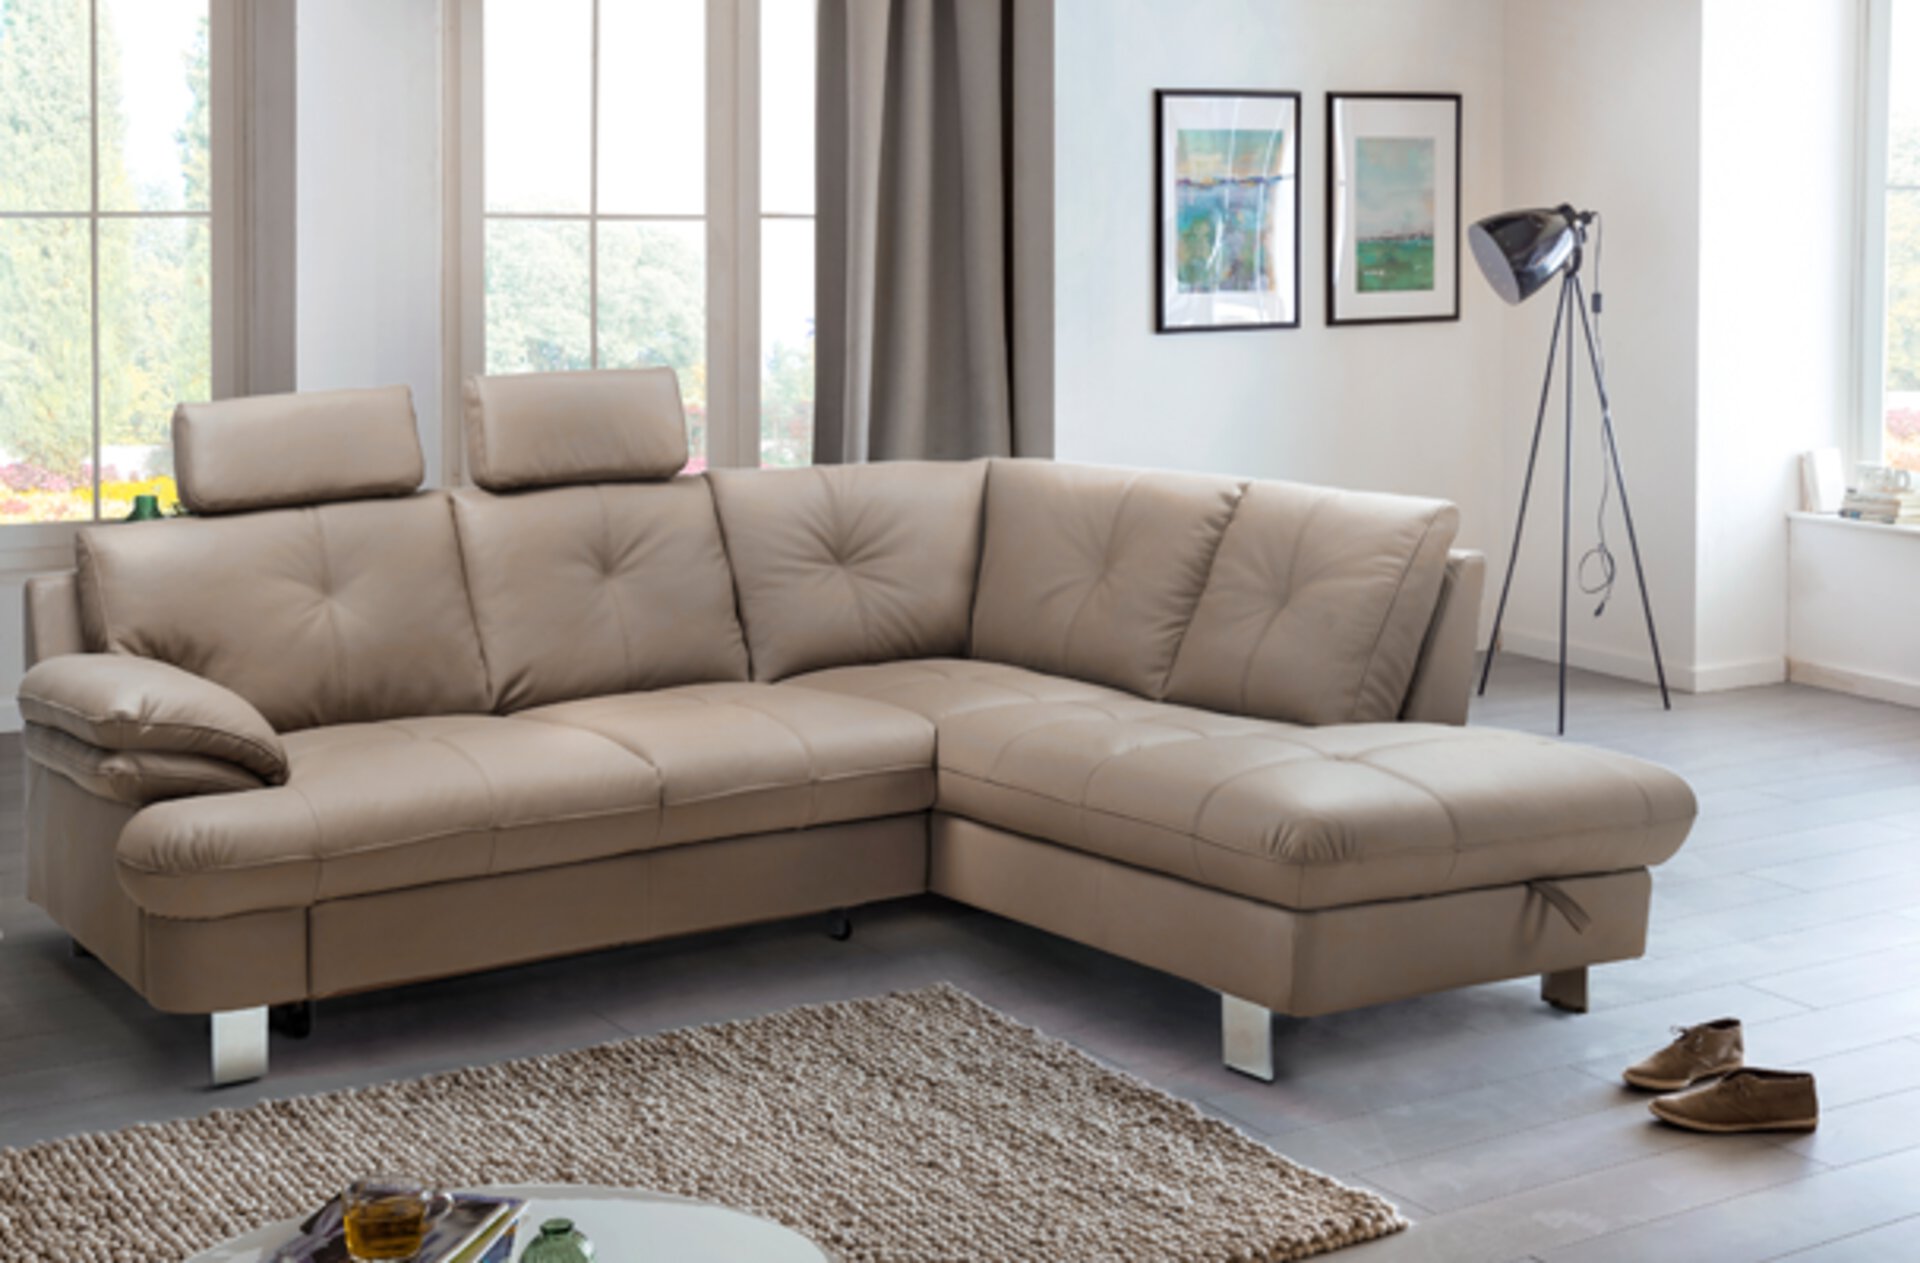 möbel wohnen wohnzimmer couch sofa garnitur hersteller marke